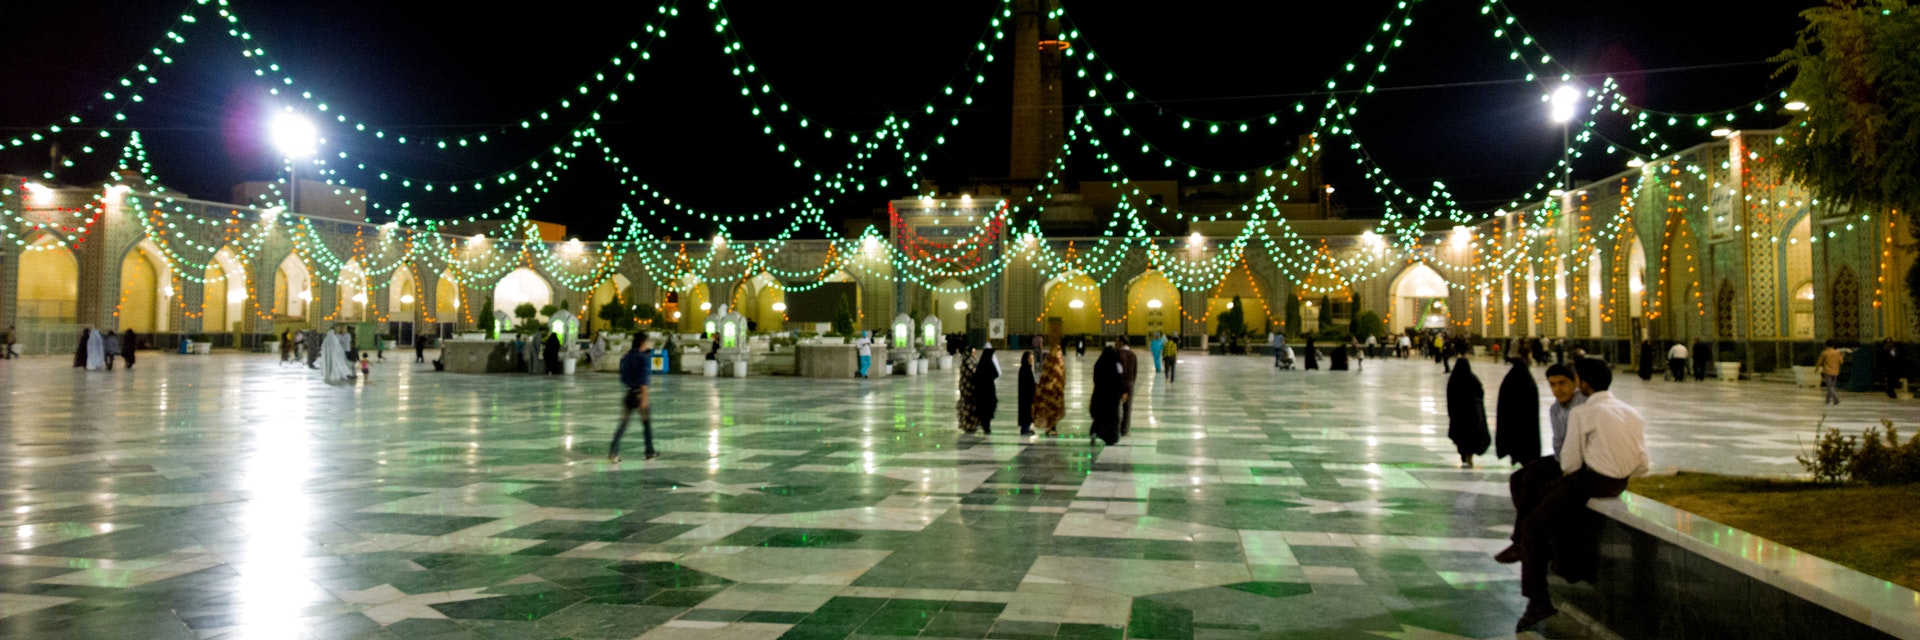 The shrine of Imam Ali alRida